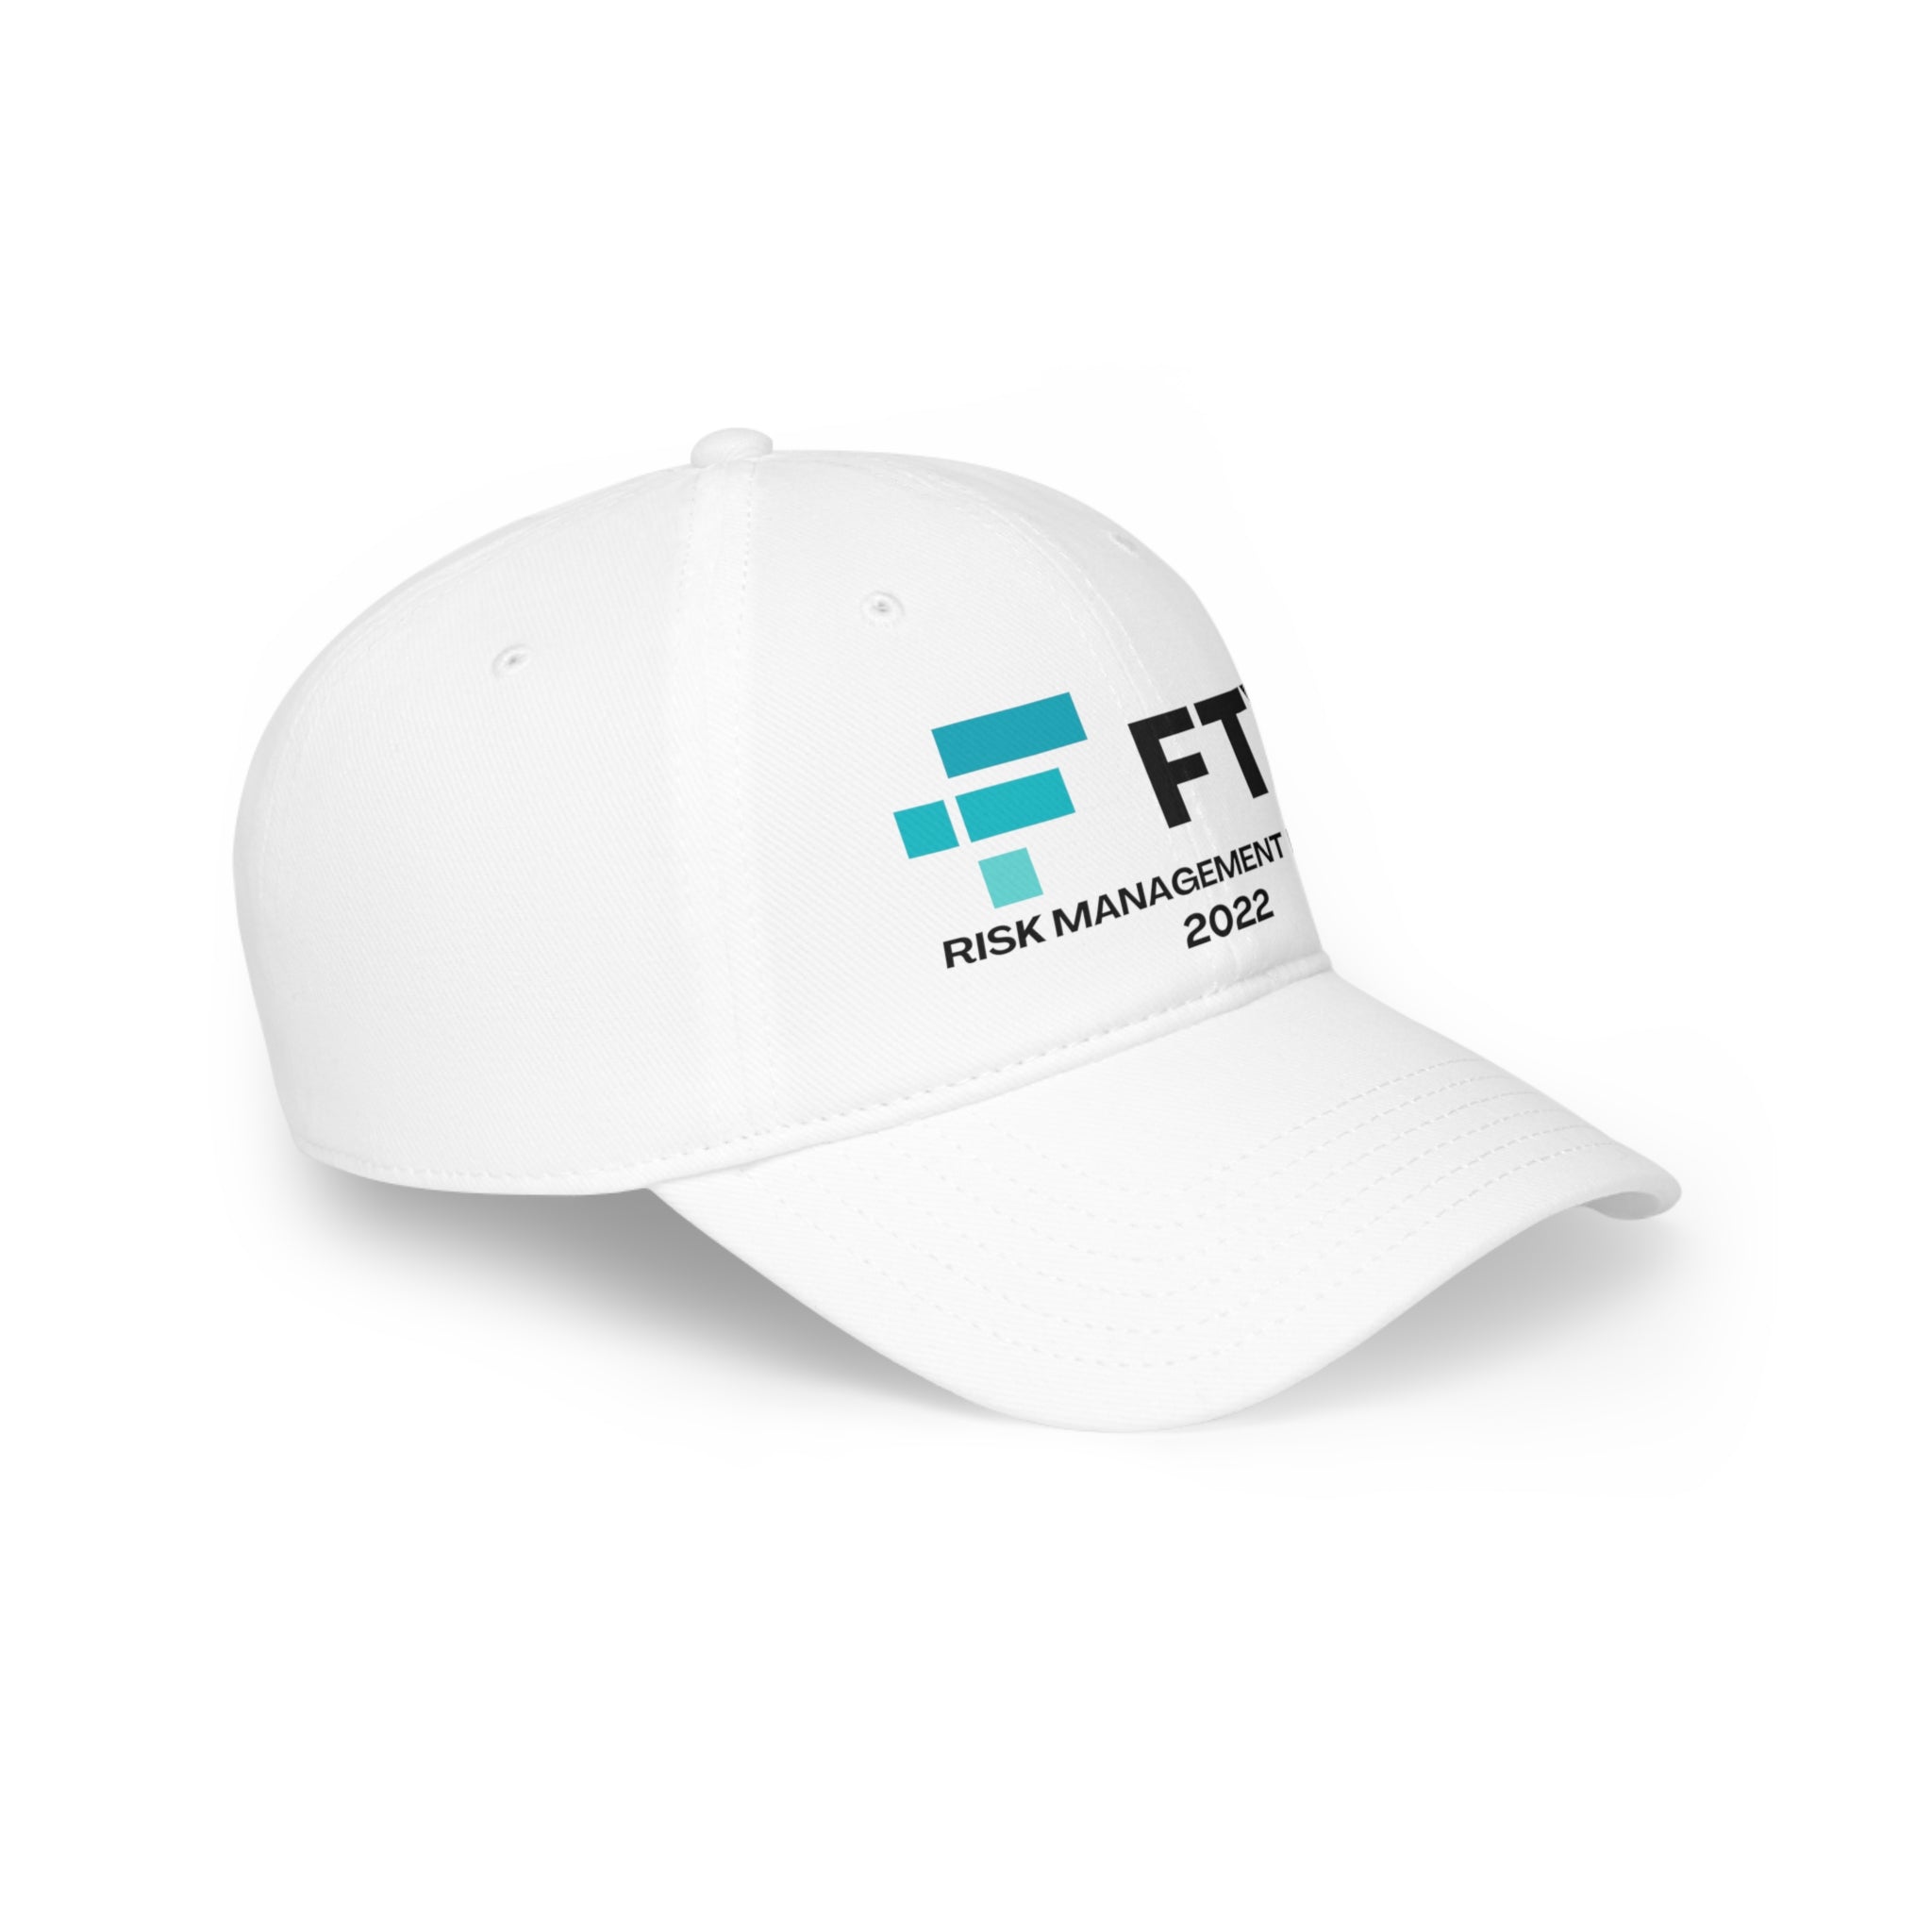 FTX Risk Management Intern 2022 - Hat